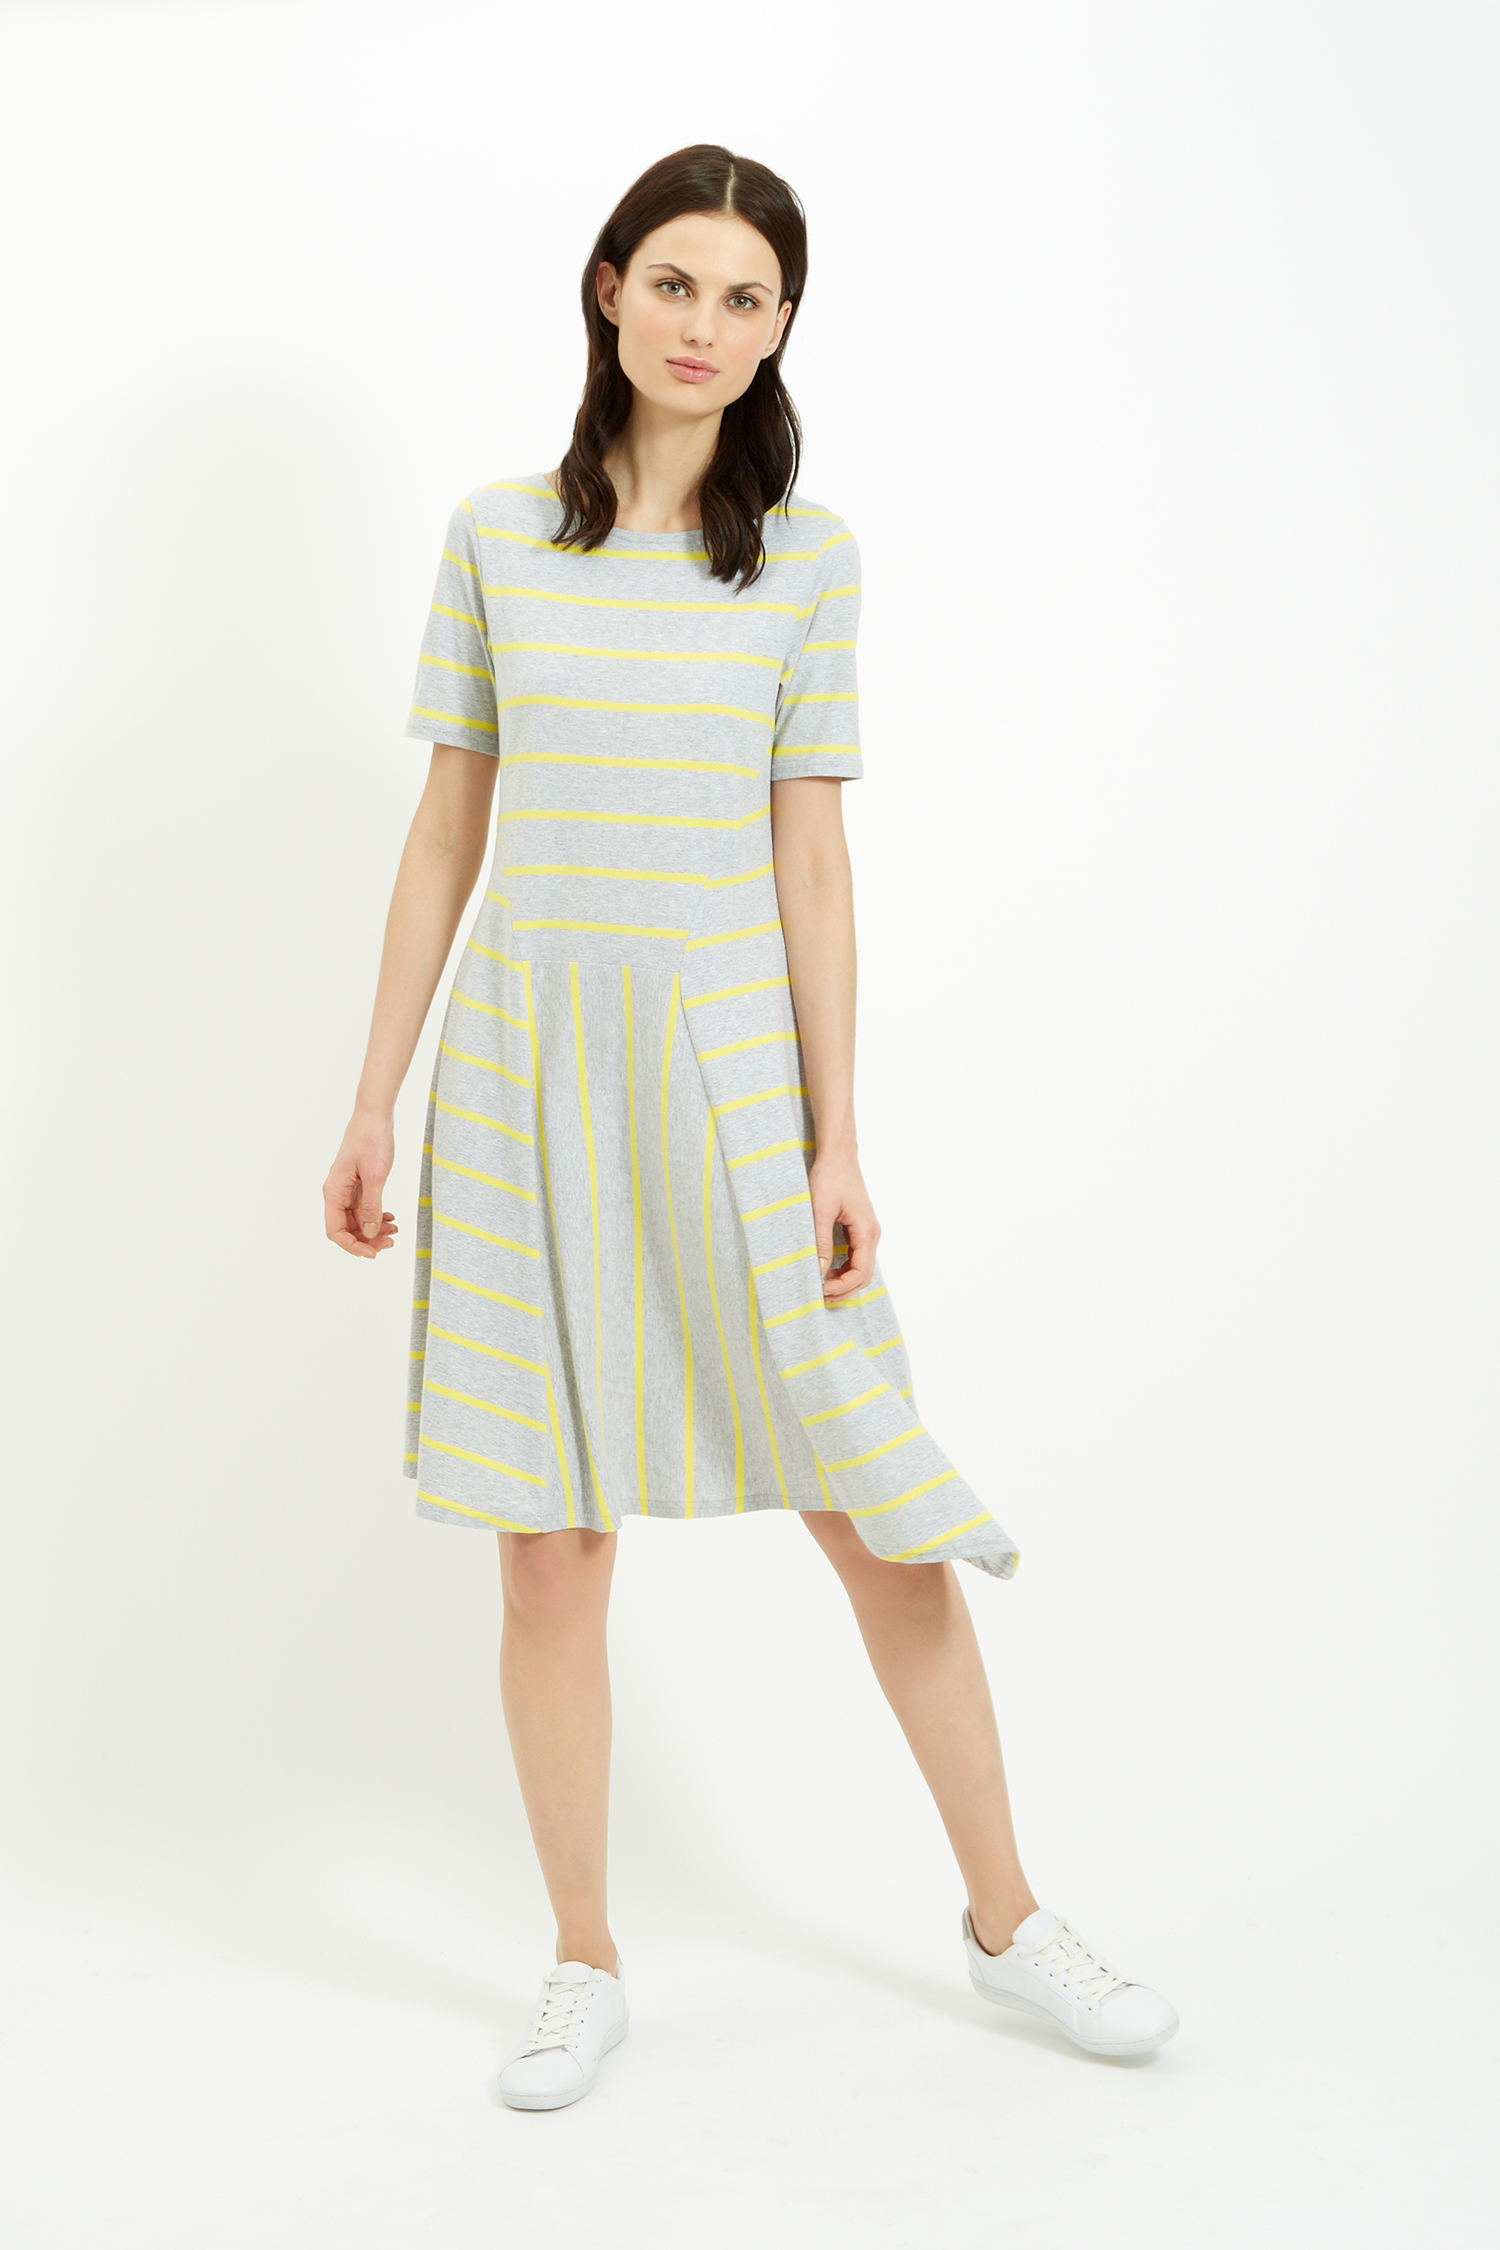 http://www.peopletree.co.uk/women/dresses/stripe-flared-dress-in ...